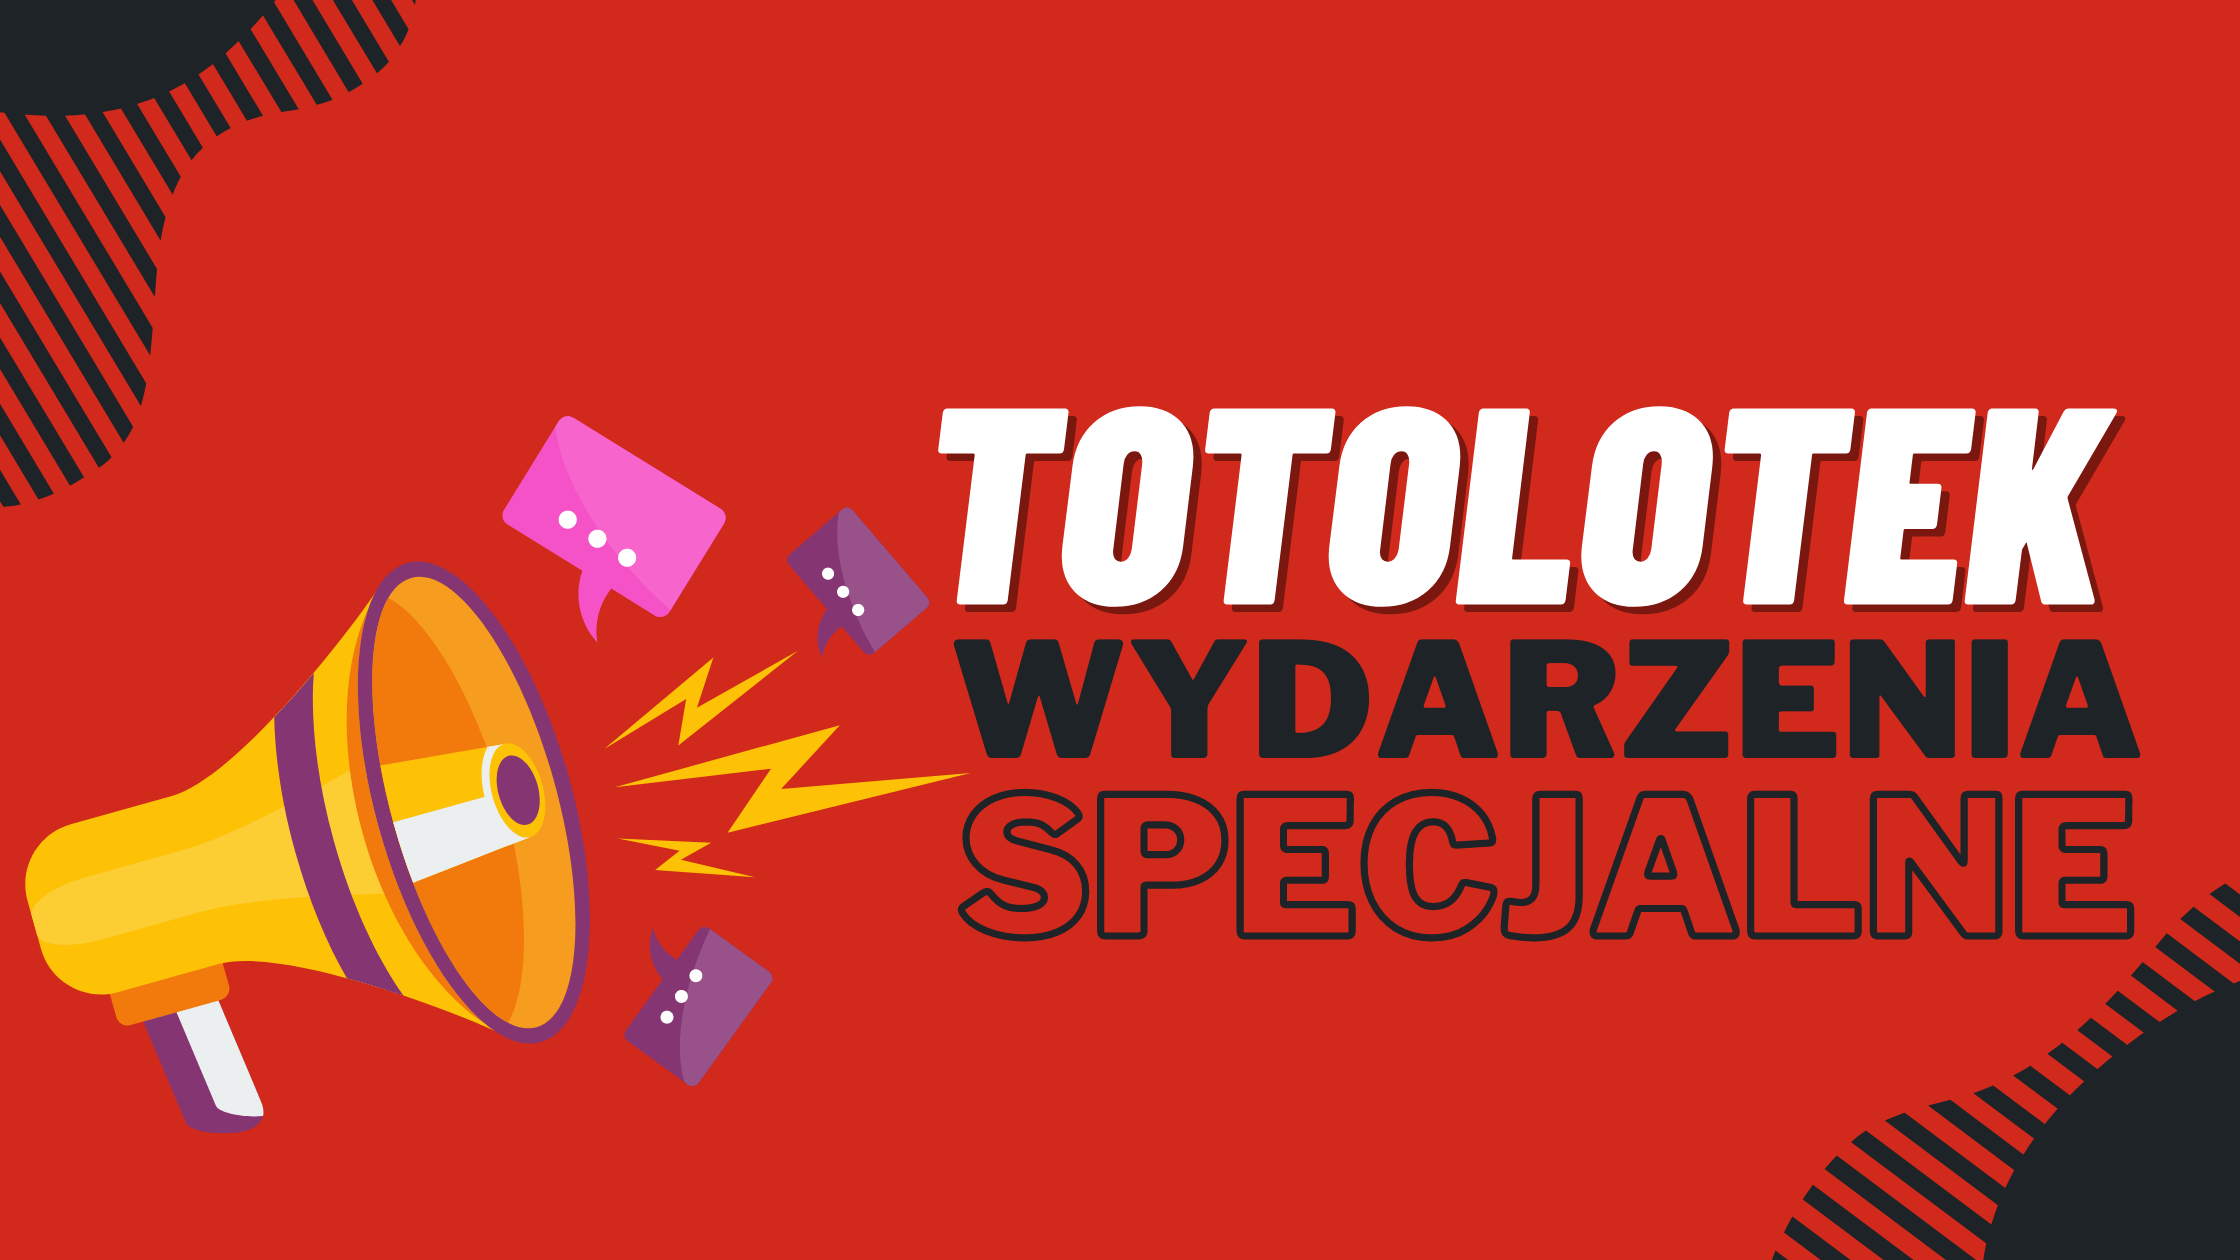 Legalny polski bukmacher Totolotek wydarzenia specjalne